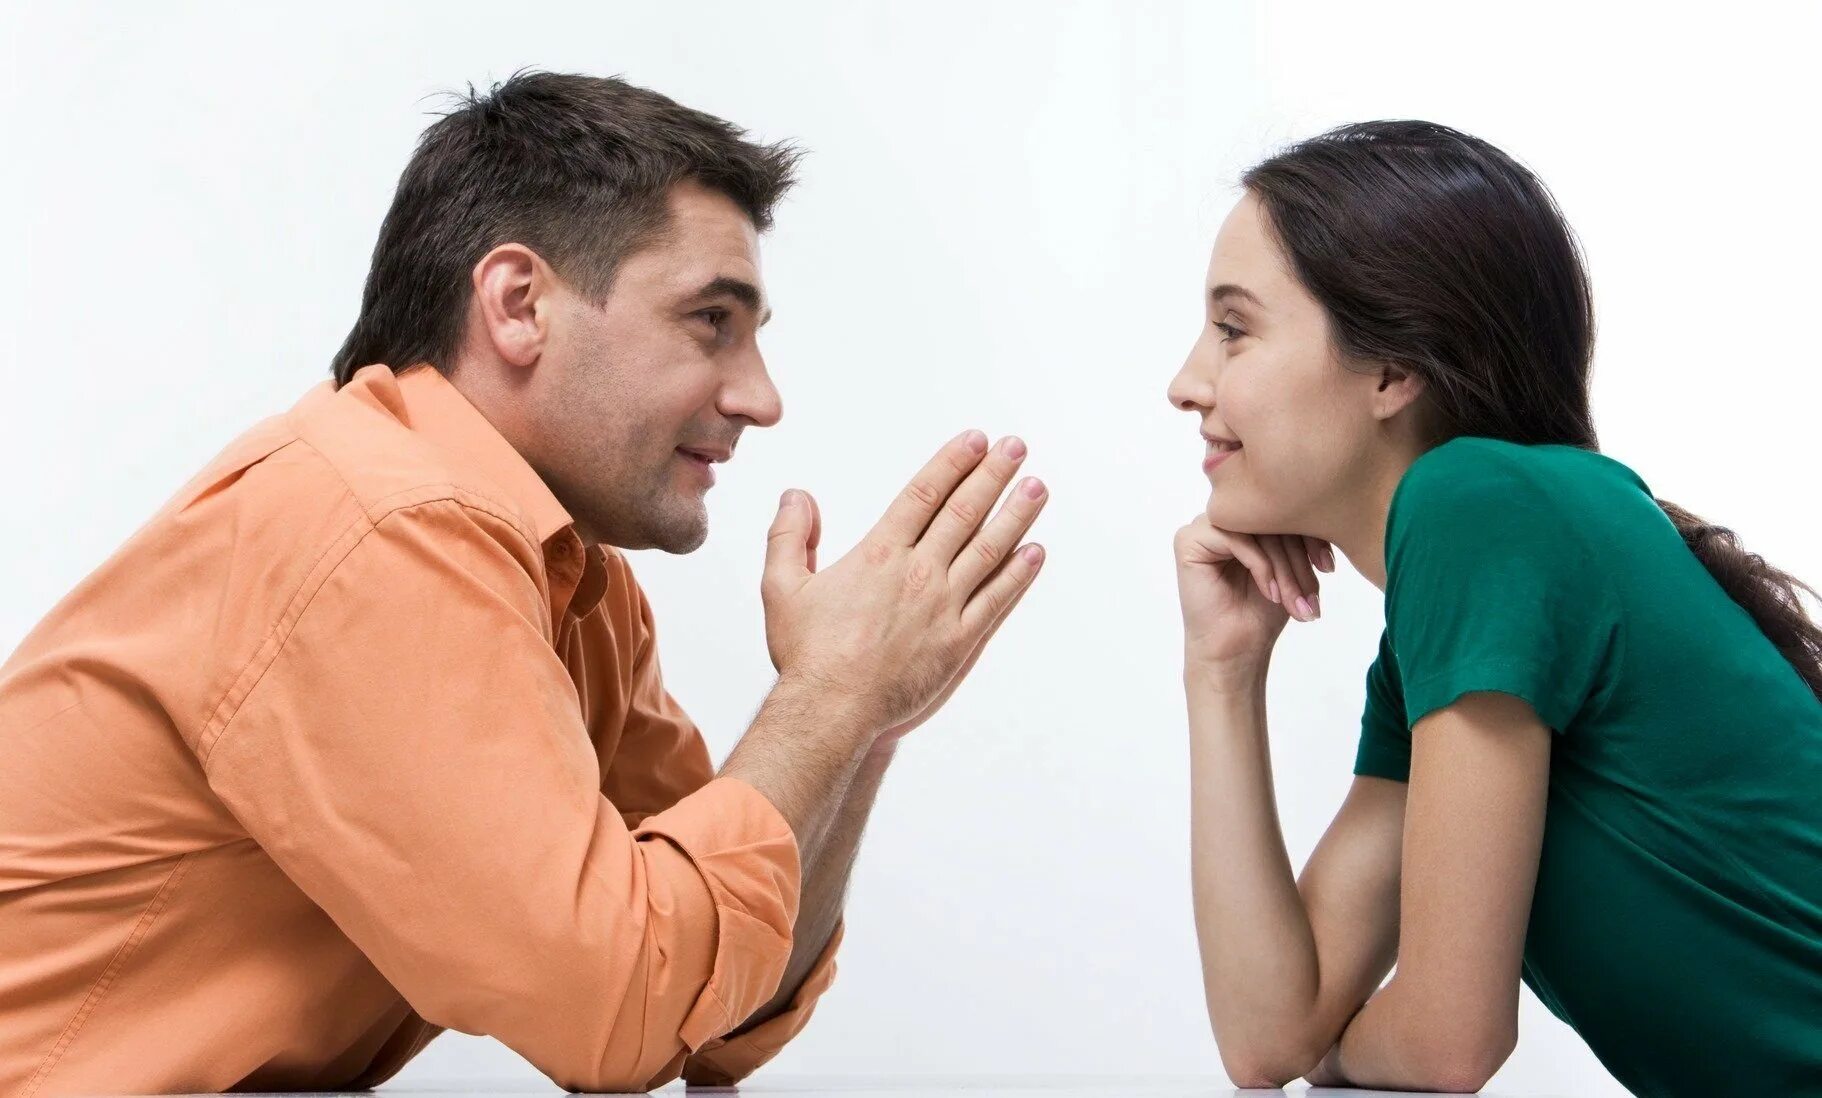 Почему говорят послушать. Разговор между мужчиной и женщиной. Общение людей. Взаимопонимание в общении. Беседа мужчины и женщины.